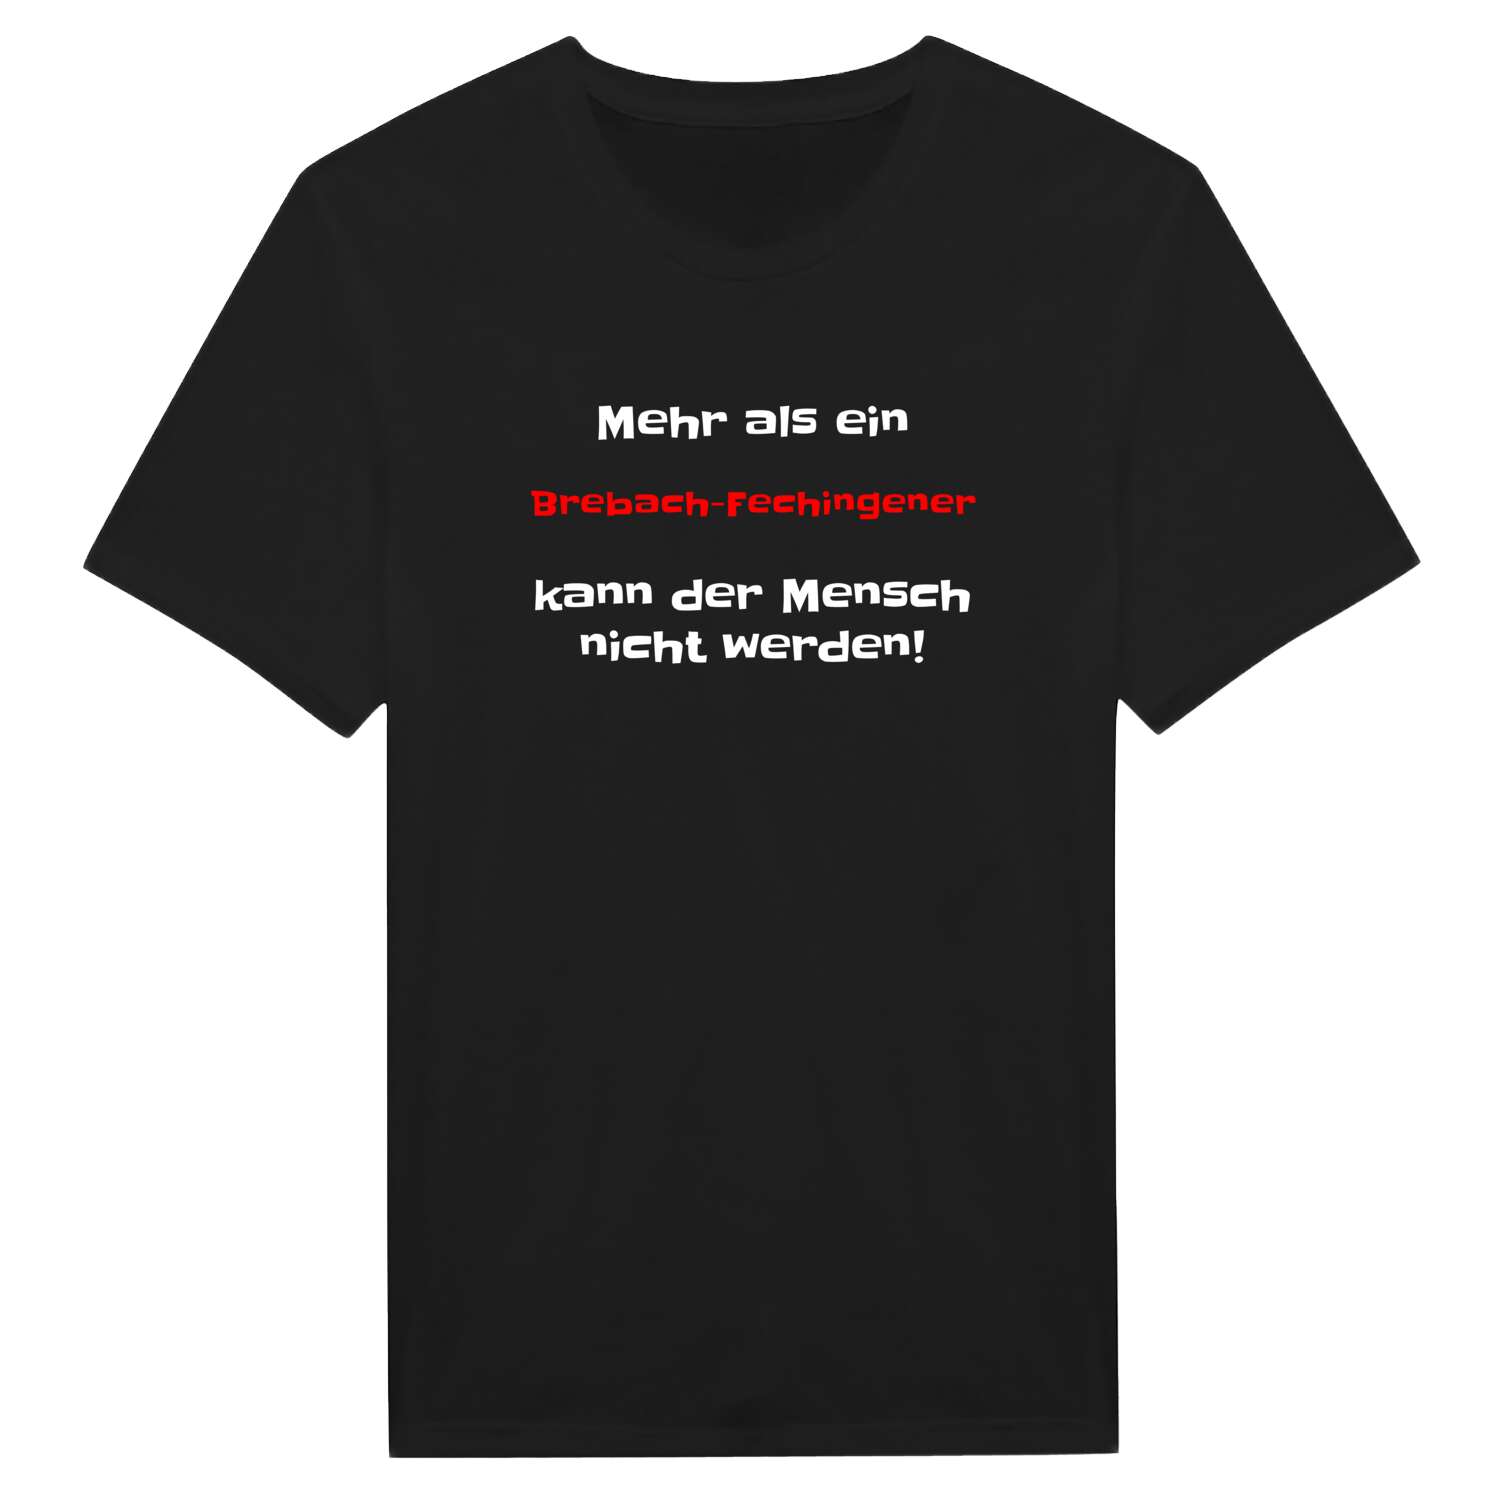 Brebach-Fechingen T-Shirt »Mehr als ein«